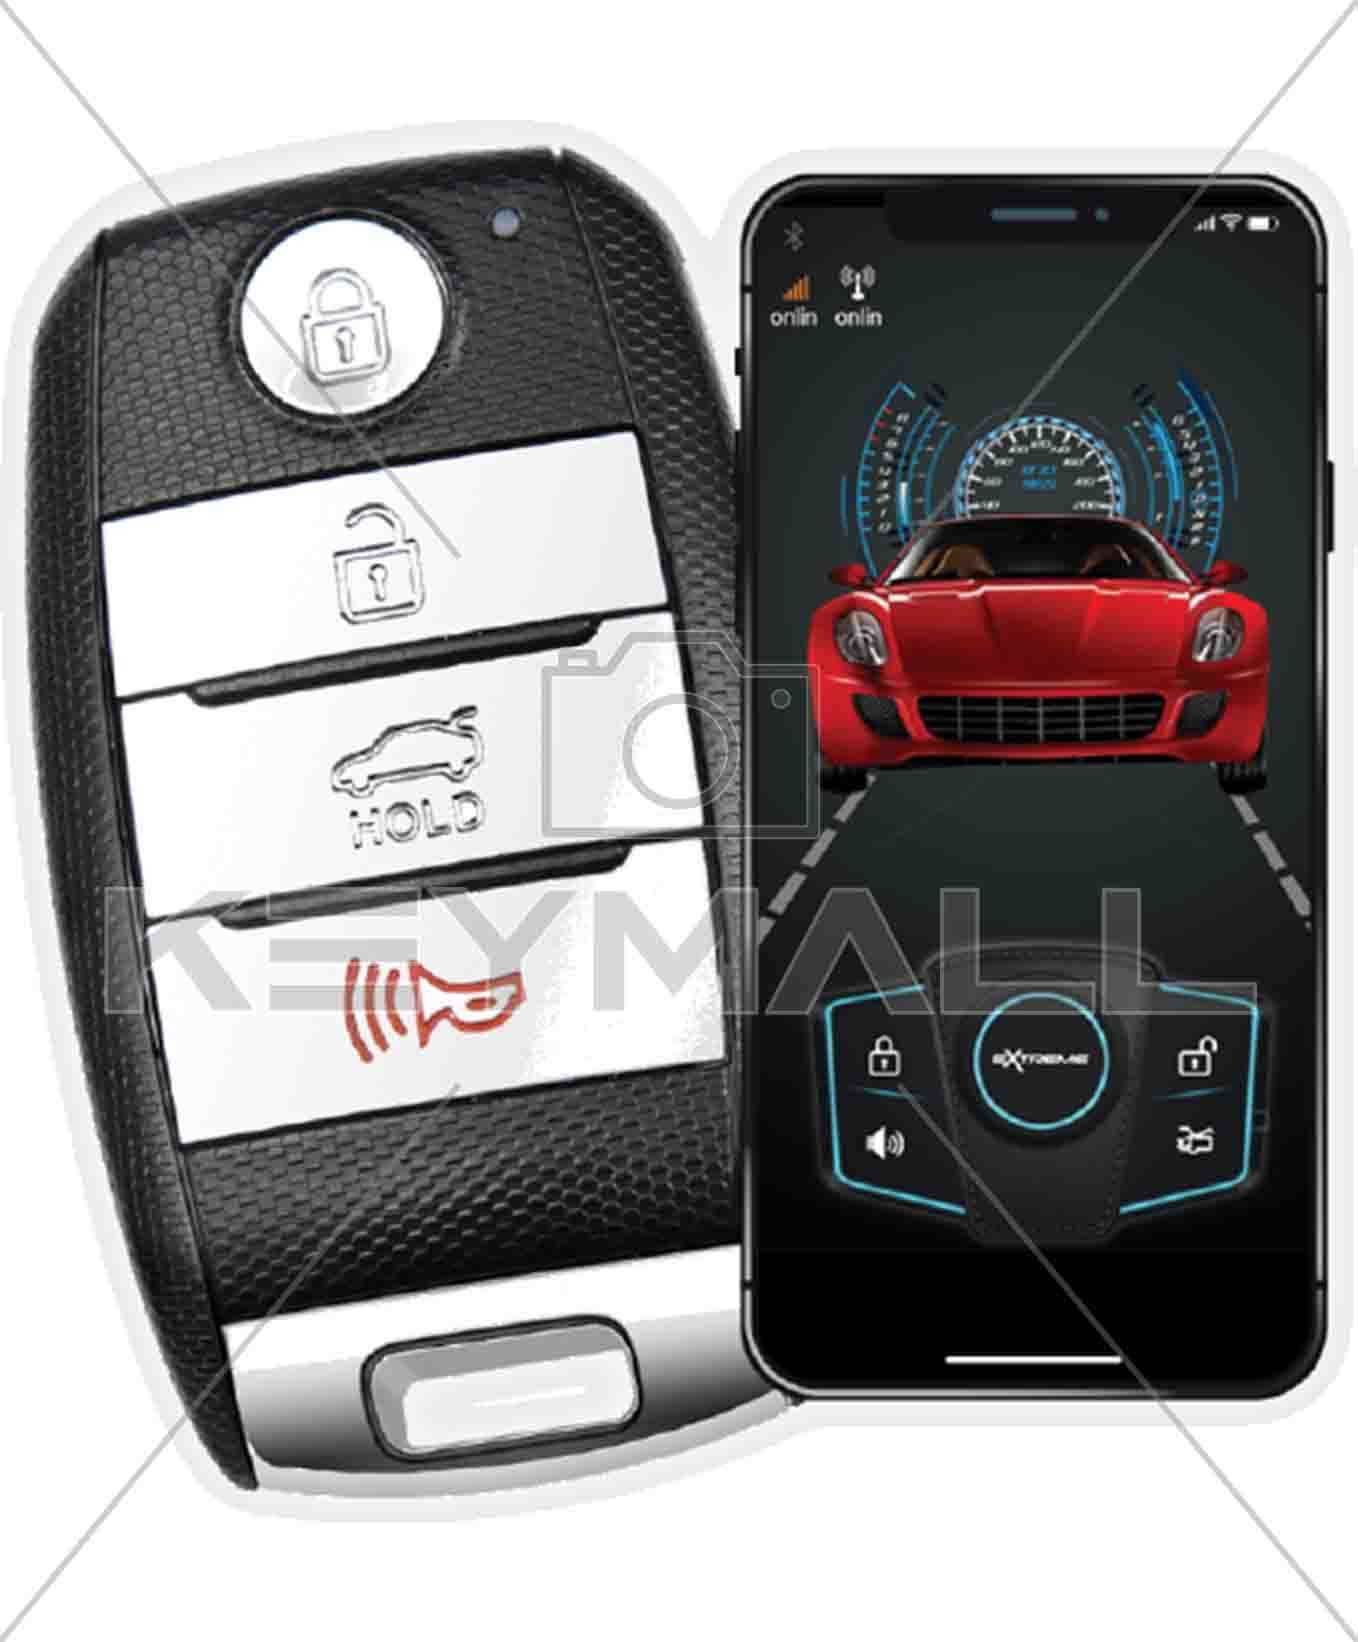 Alarma de coche: aviso al móvil para máxima seguridad